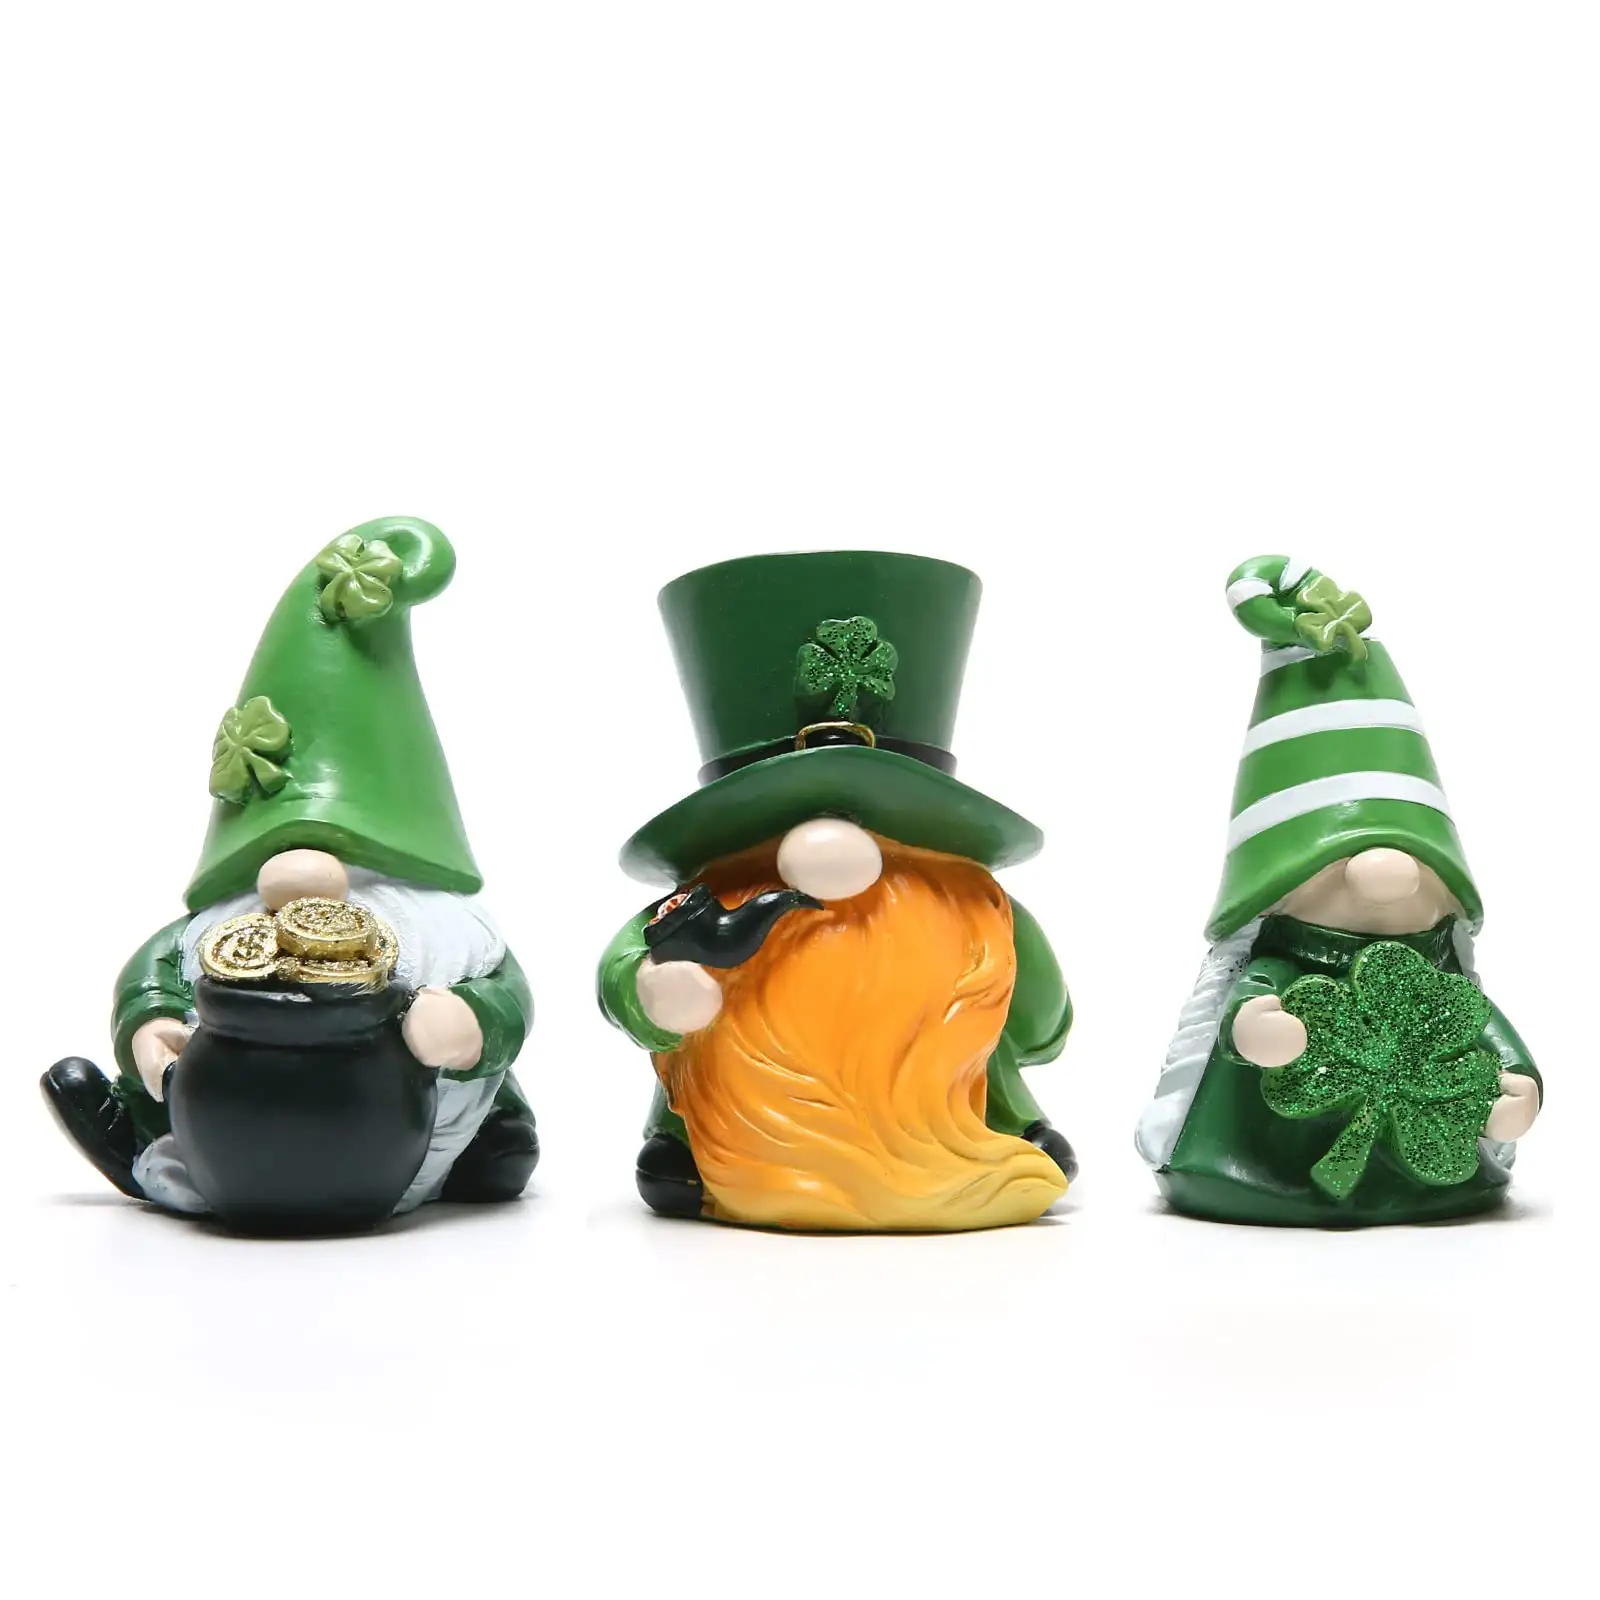 Set di 3 Figurine in resina per il giorno di san patrizio. Ornamento decorativo per le vacanze della bambola senza volto di Shamrock verde irlandese